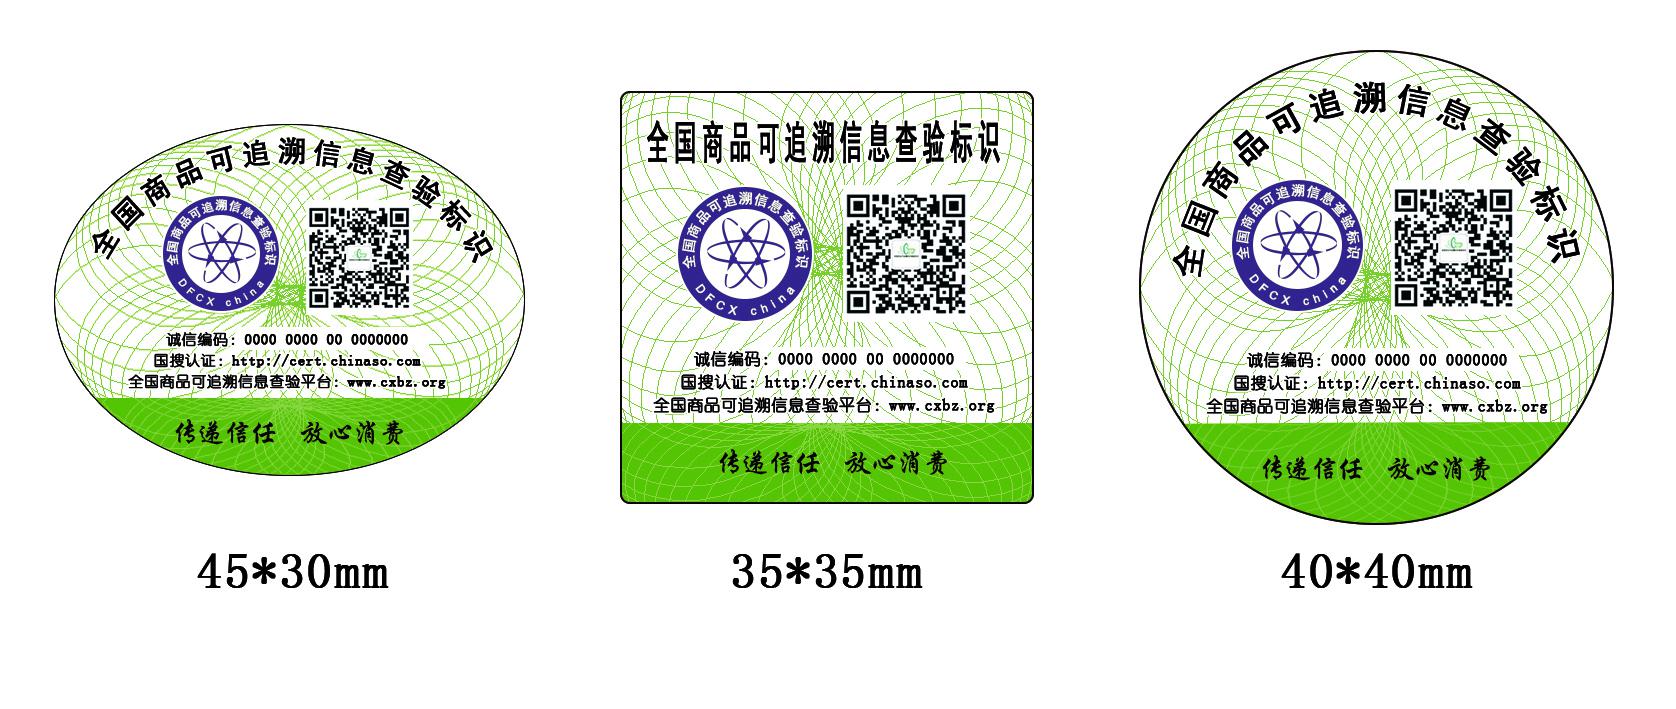 中国地理标志产品“颖青”牌绿茶应用